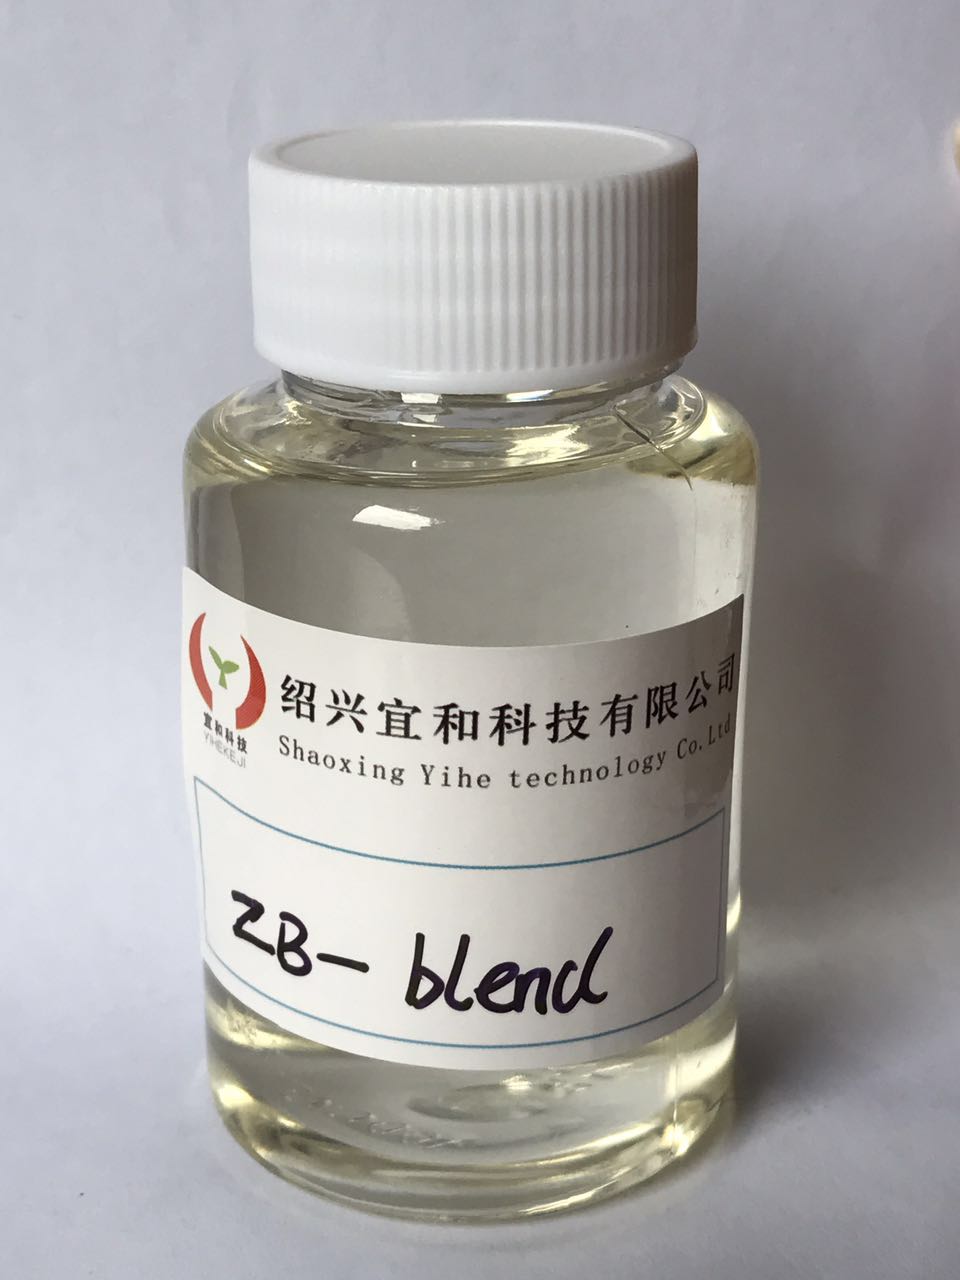 锌铋复合催化剂、聚氨酯环保催化剂